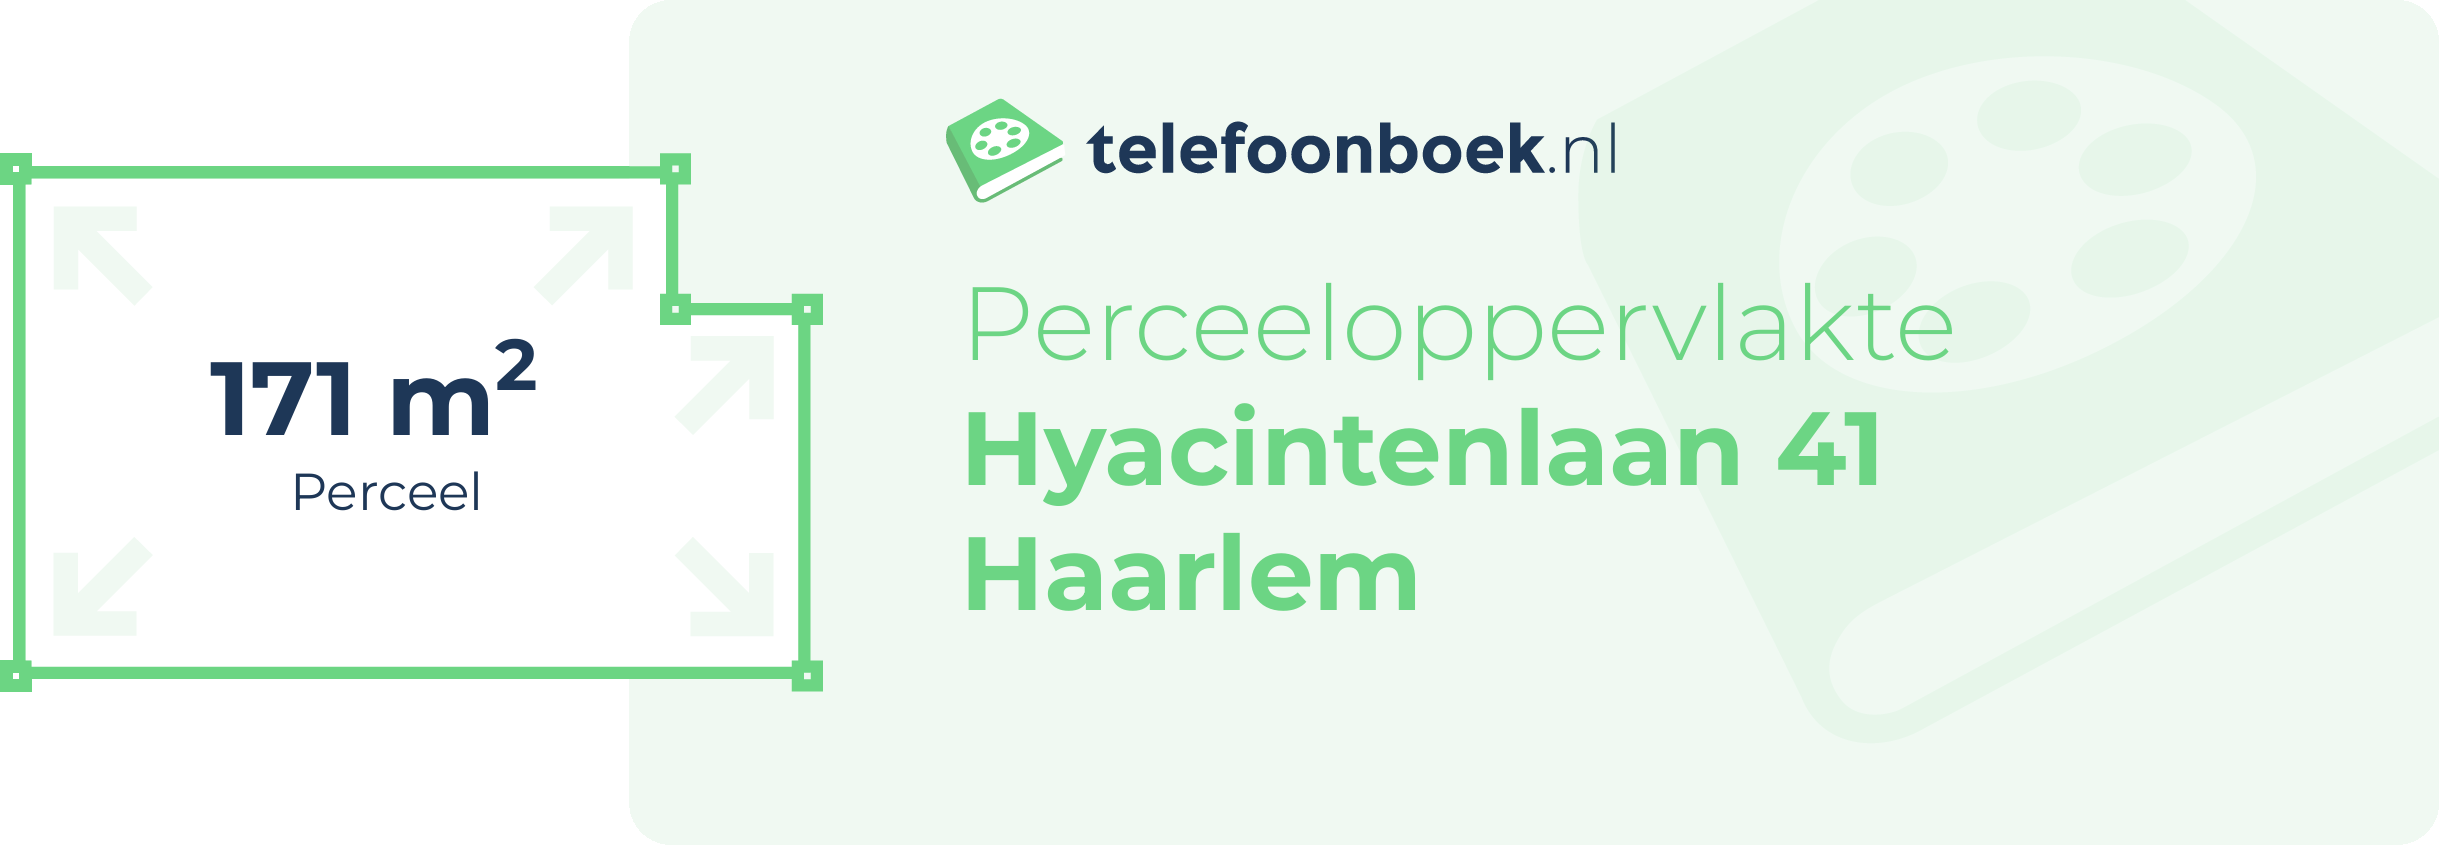 Perceeloppervlakte Hyacintenlaan 41 Haarlem